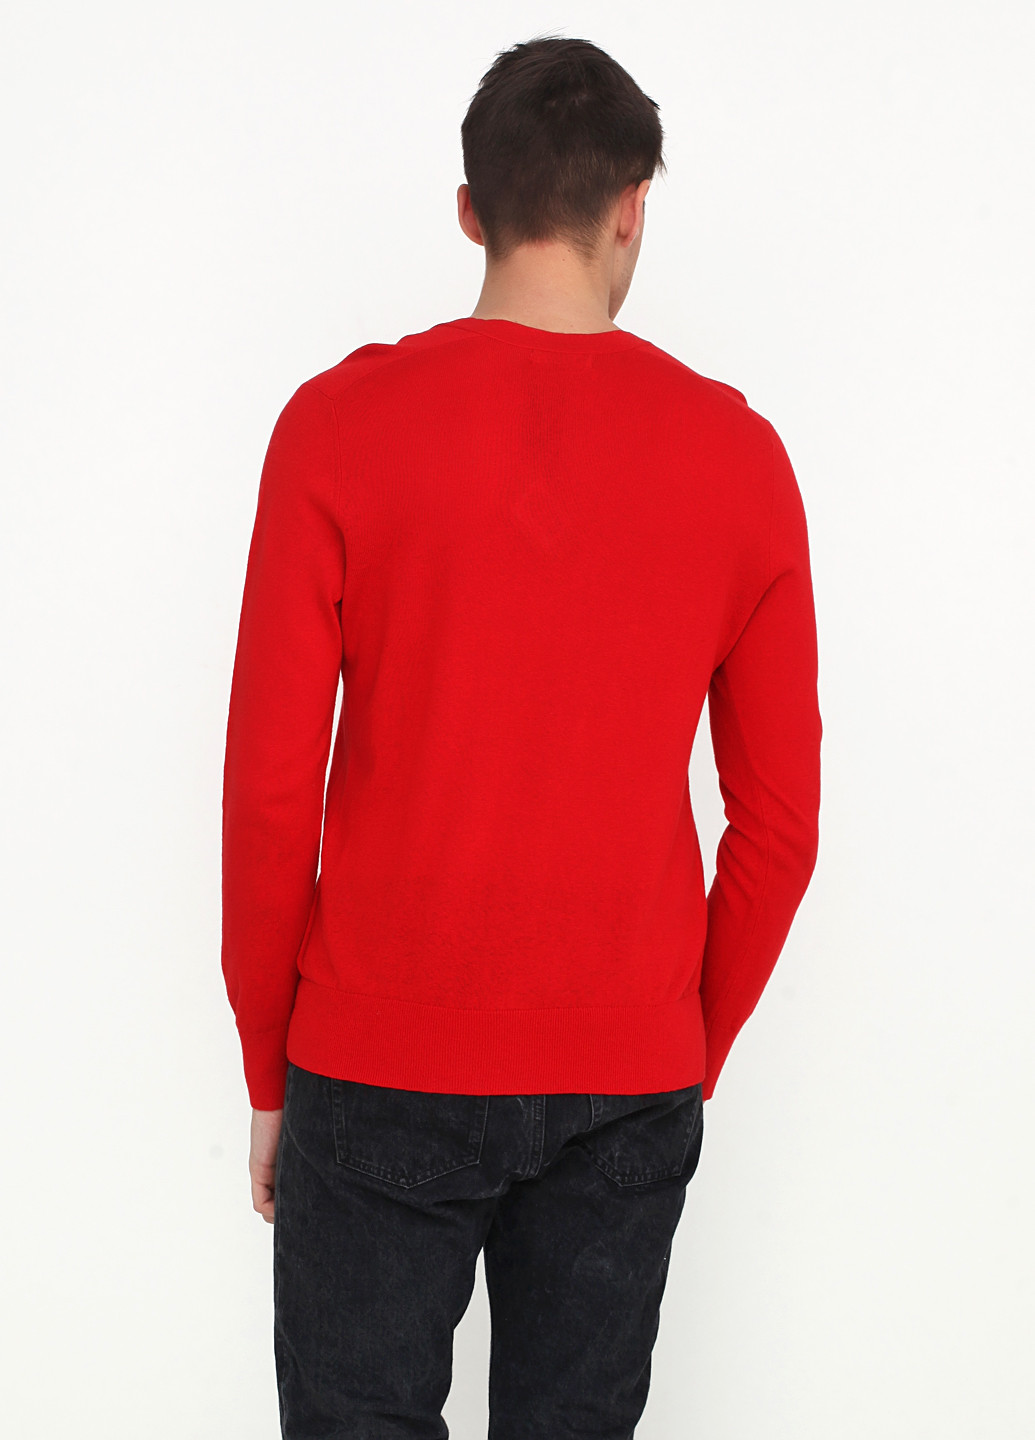 Красный демисезонный пуловер пуловер Banana Republic